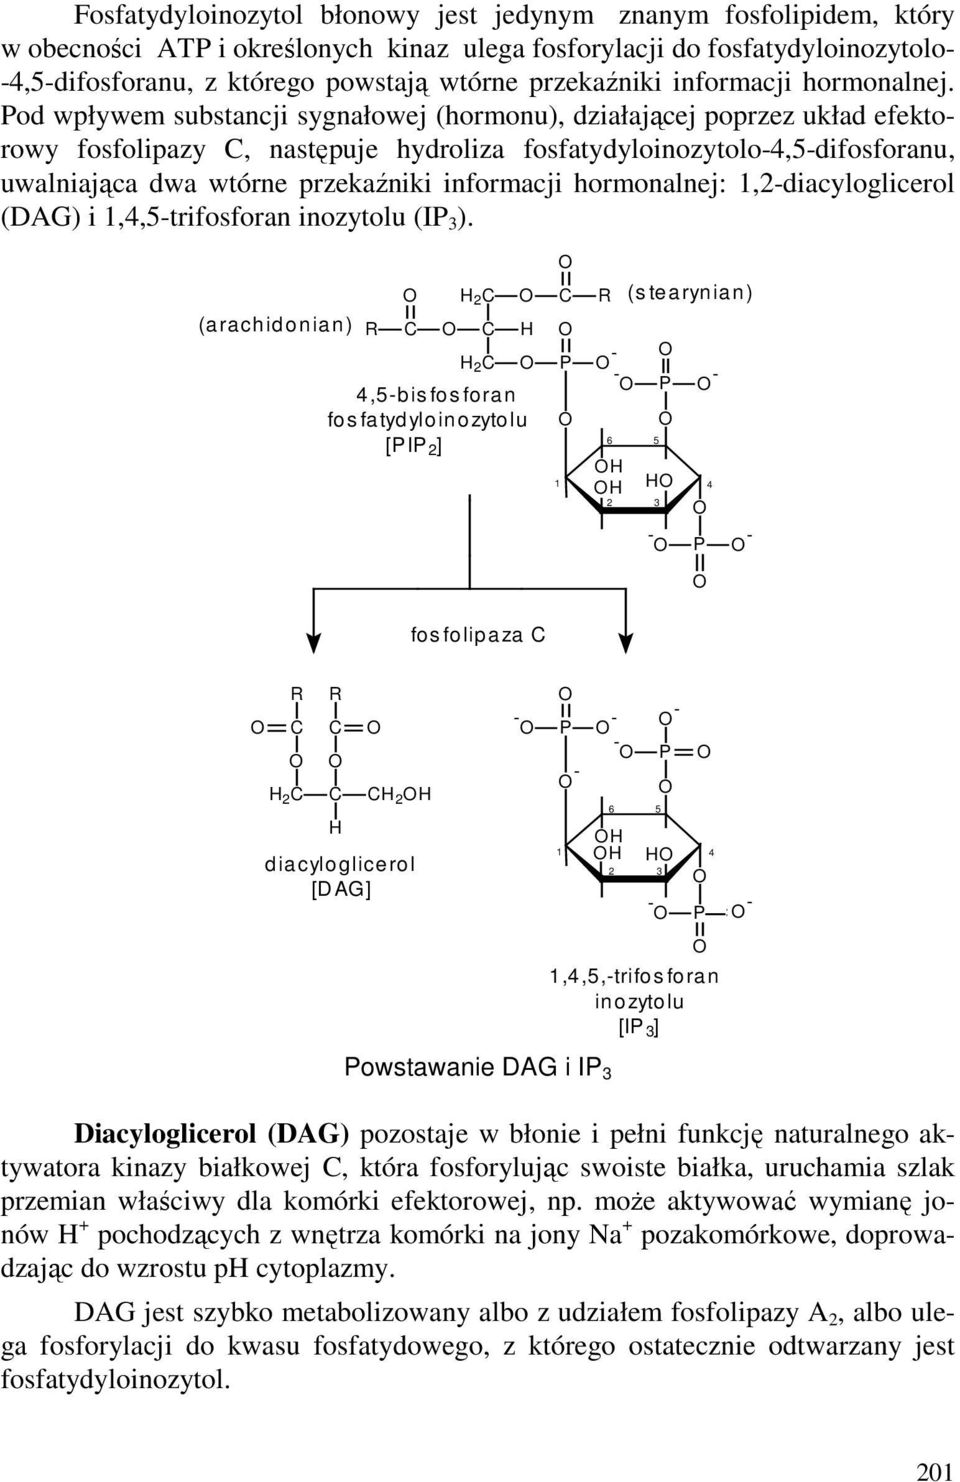 Pod wpływem substancji sygnałowej (hormonu), działającej poprzez układ efektorowy fosfolipazy, następuje hydroliza fosfatydyloinozytolo-4,5-difosforanu, uwalniająca dwa wtórne przekaźniki informacji